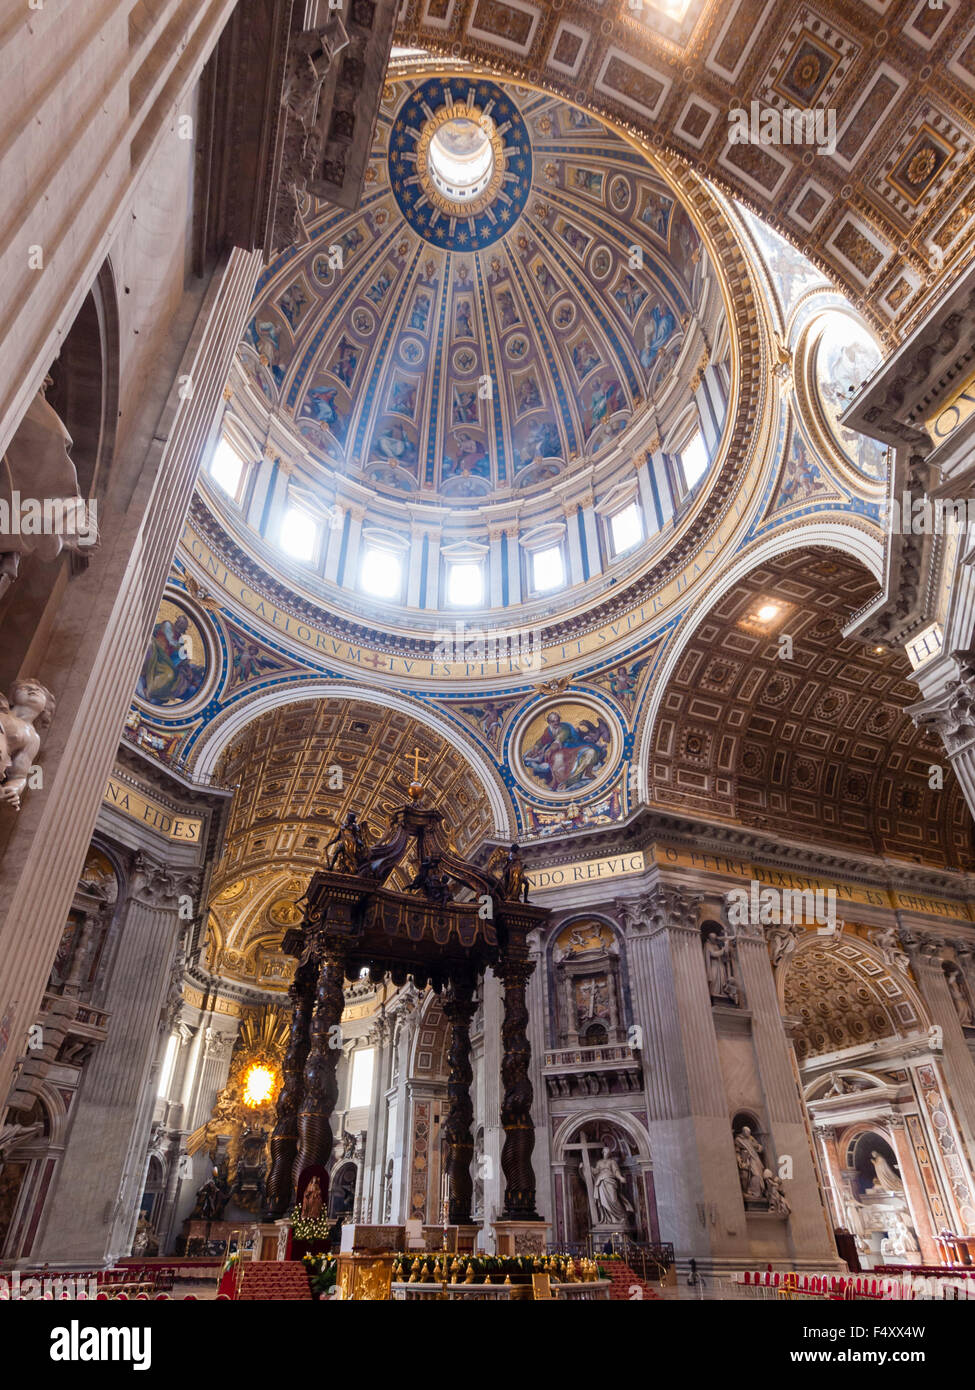 Intérieur de la Basilique Papale de Saint-Pierre, Vatican : choeur avec l'autel Bernini baldacchino sous la coupole principale. Banque D'Images